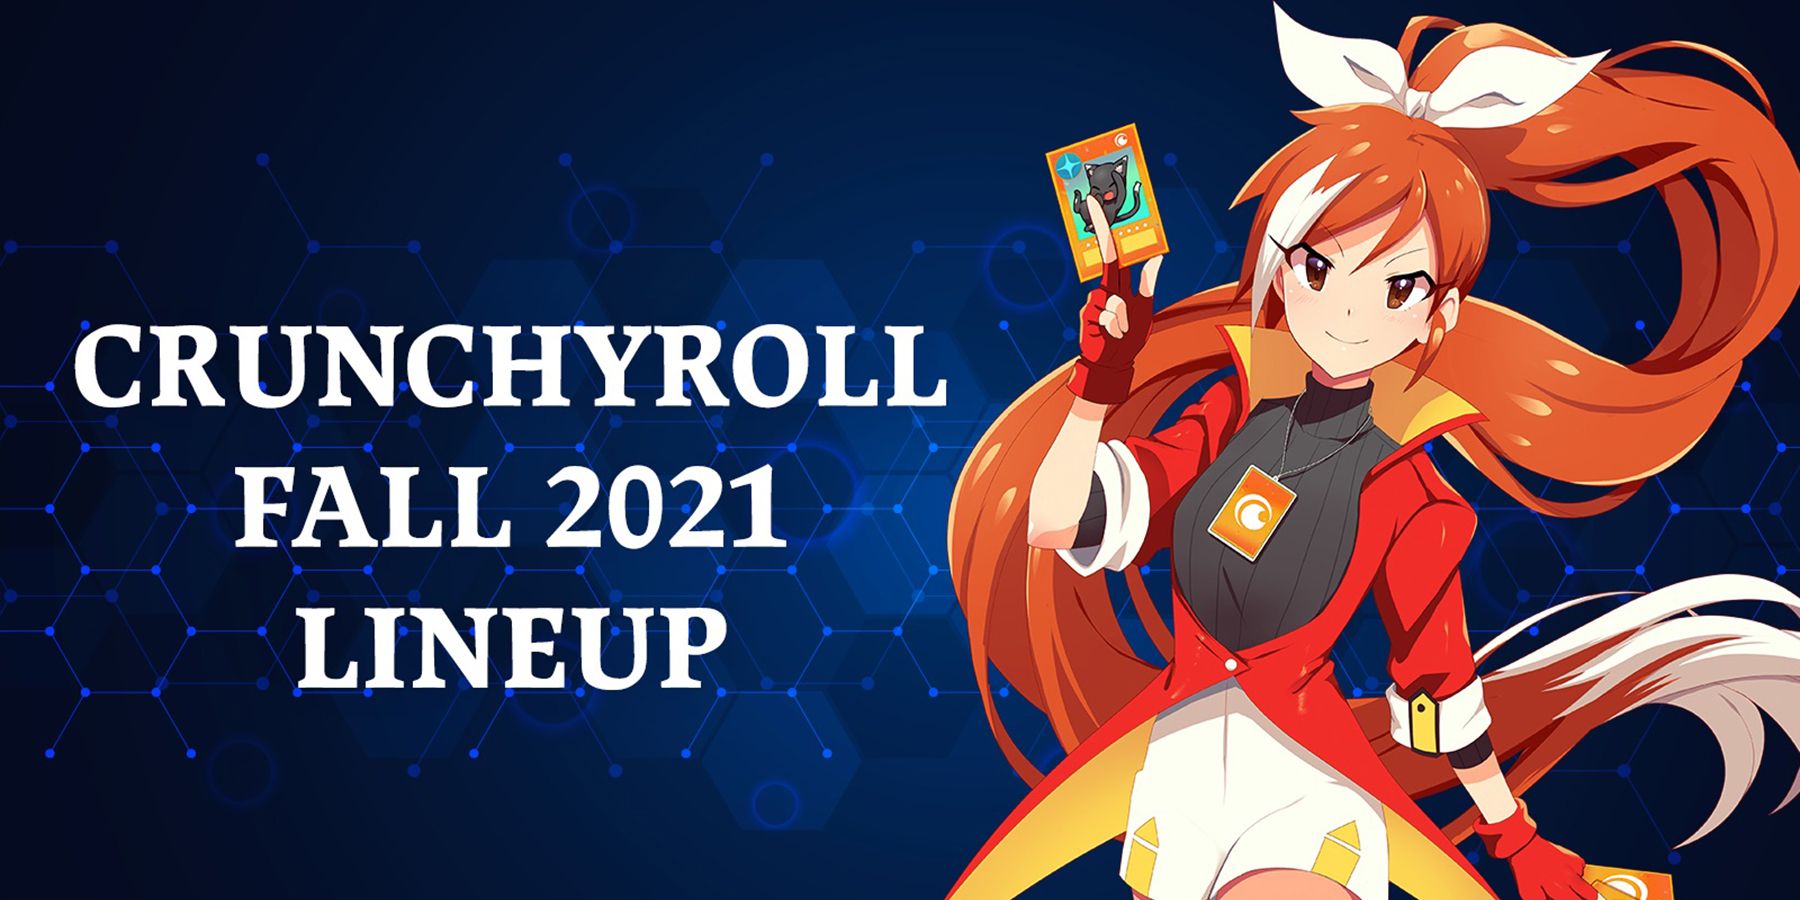 Crunchyroll revela una emocionante alineación para el otoño de 2021, que incluye a Demon Slayer